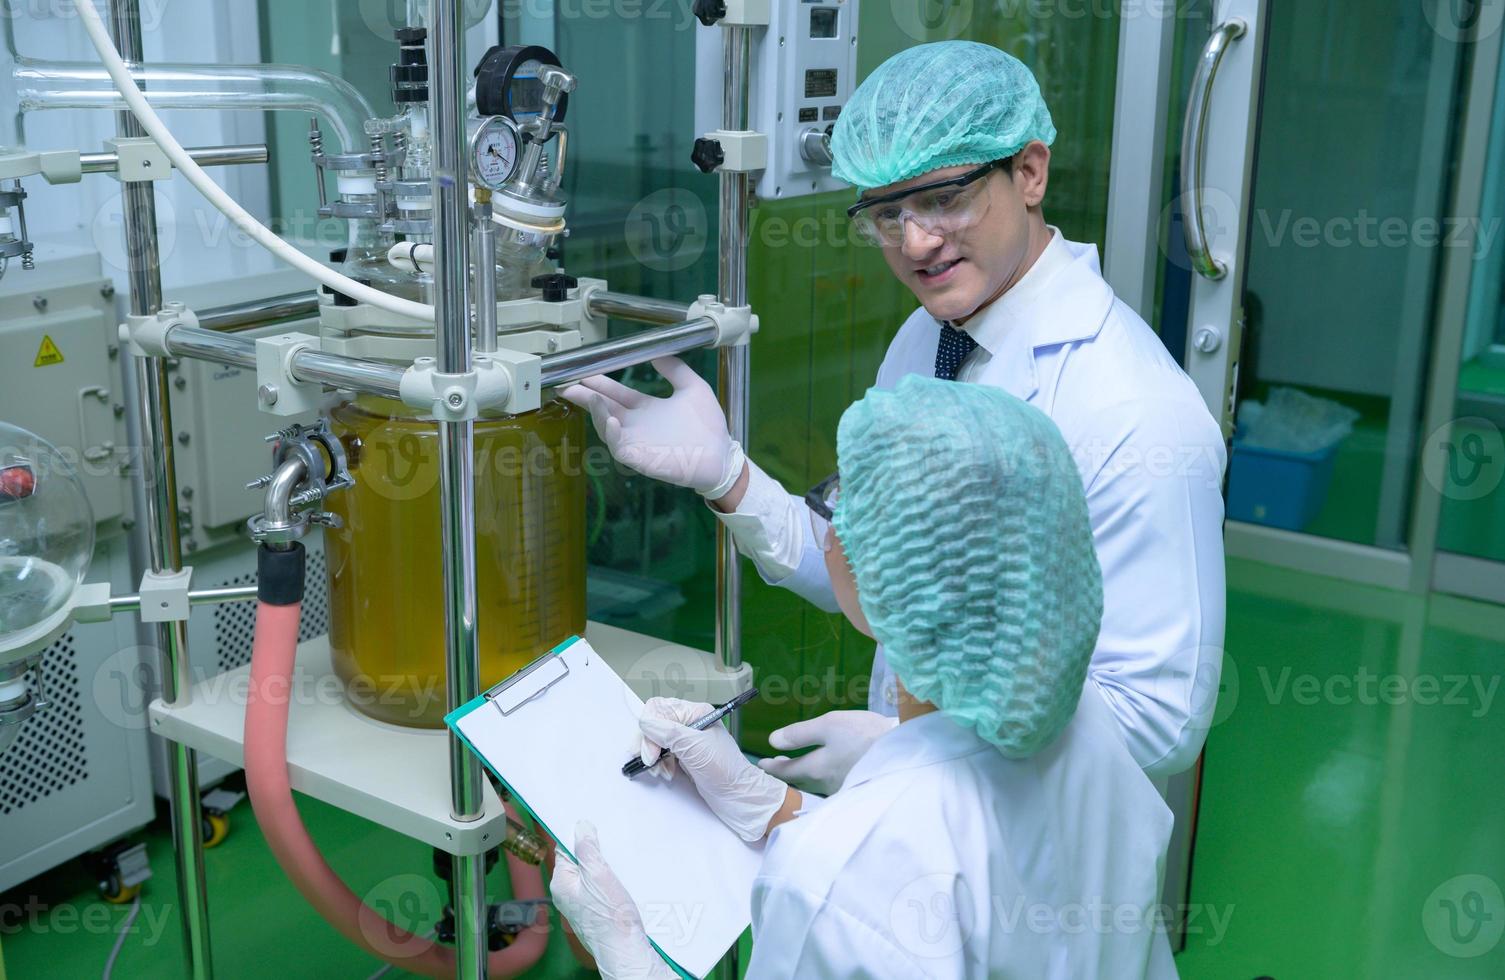 Los científicos y asistentes están en la sala de máquinas extrayendo aceite y semillas de cannabis. inspección del extractor de aceite de cannabis antes de comenzar a extraer el cannabis preparado foto